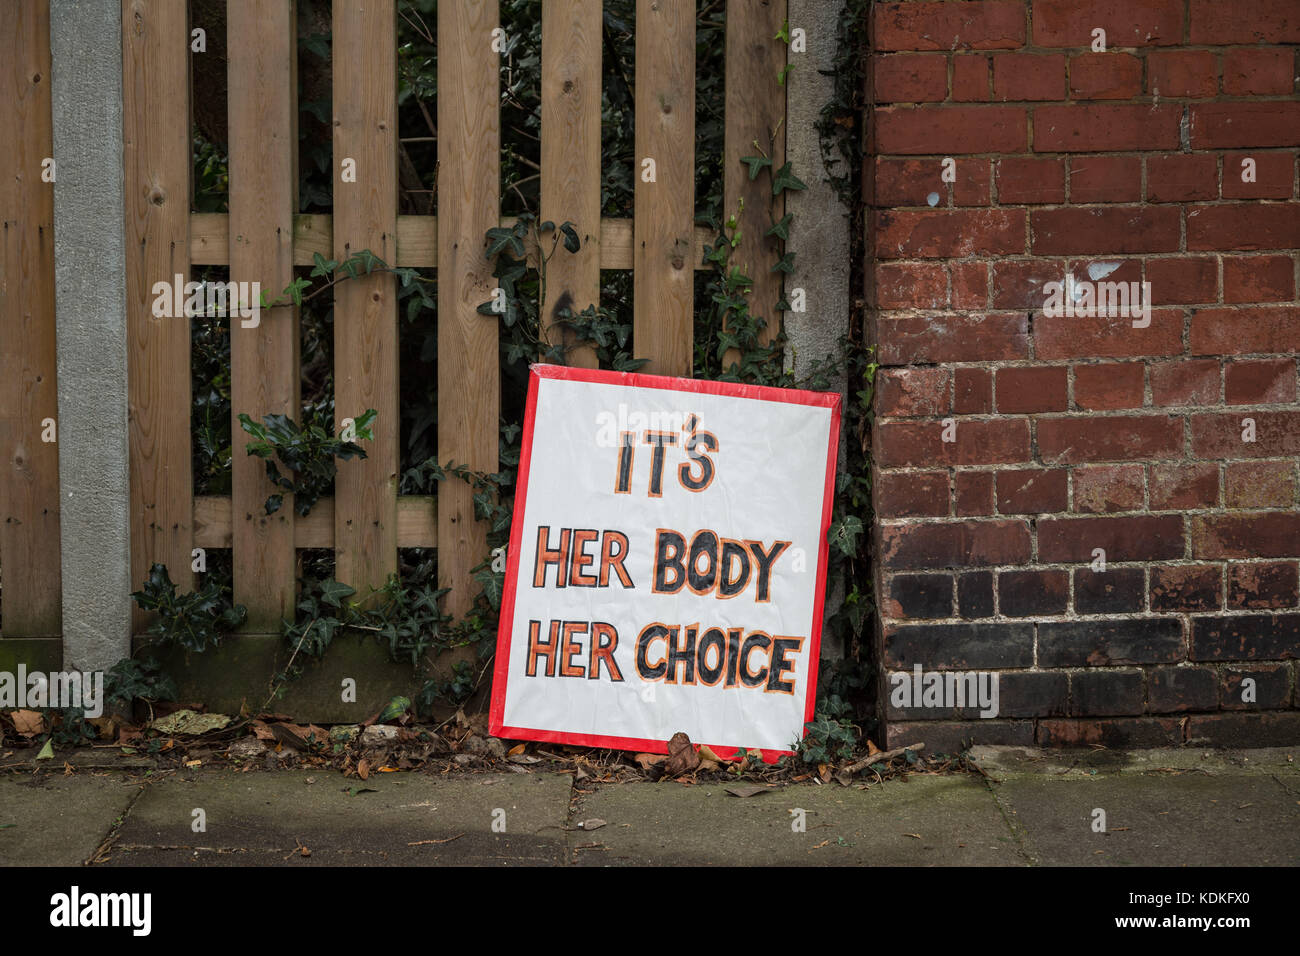 Londres, Reino Unido. 14 Oct, 2017. Hermana partidario, una mujer pro-elección, grupo de acción directa contra-protesta cristiana activistas anti-aborto en Ealing. Crédito: Guy Corbishley/Alamy Live News Foto de stock